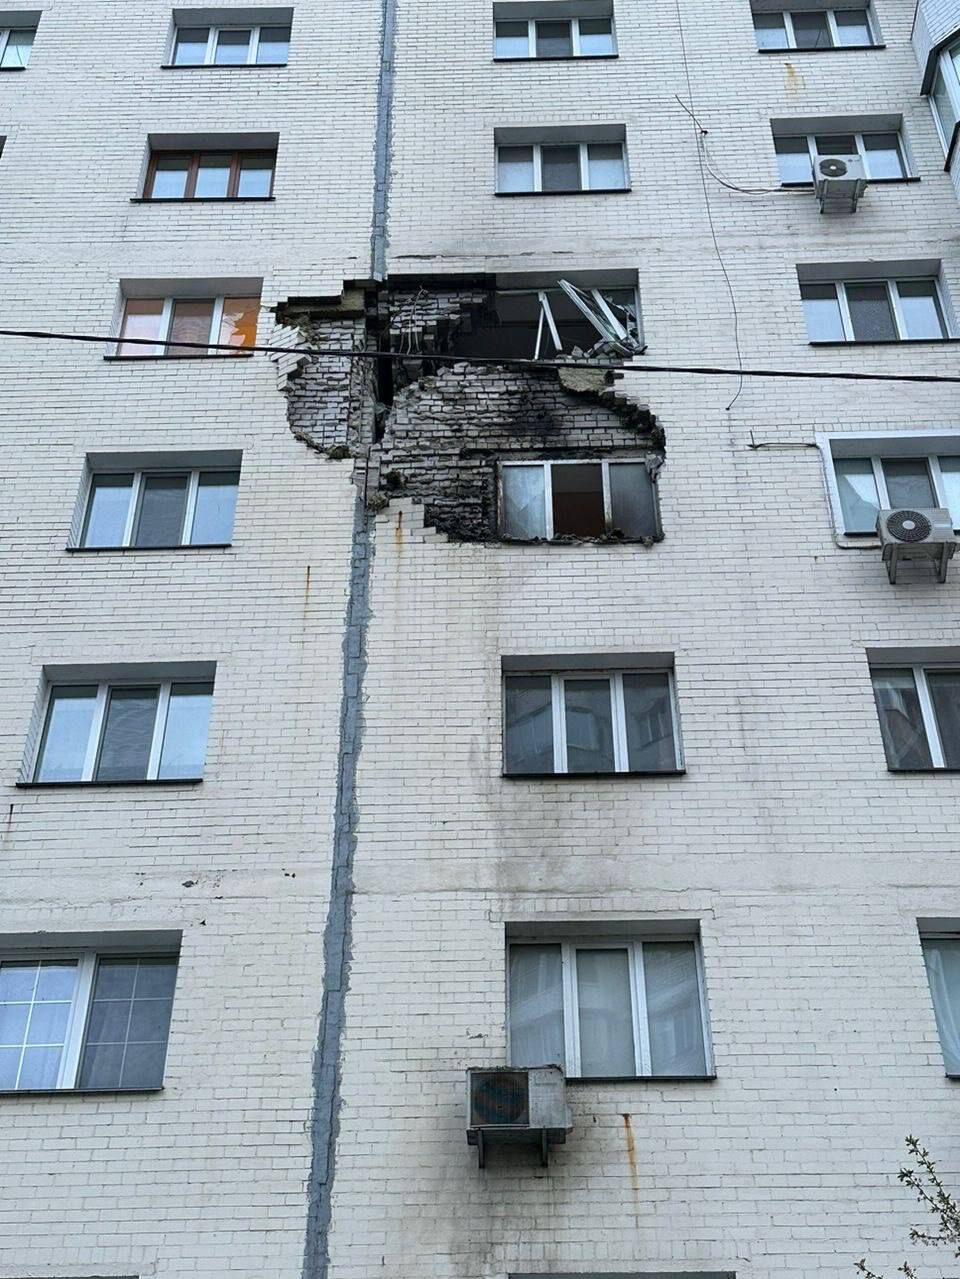 Разрушенная многоэтажка в Умани, пожары в Днепре, обломки ракеты в квартире в Украинке. Последствия ночного ракетного удара РФ. Фоторепортаж 37